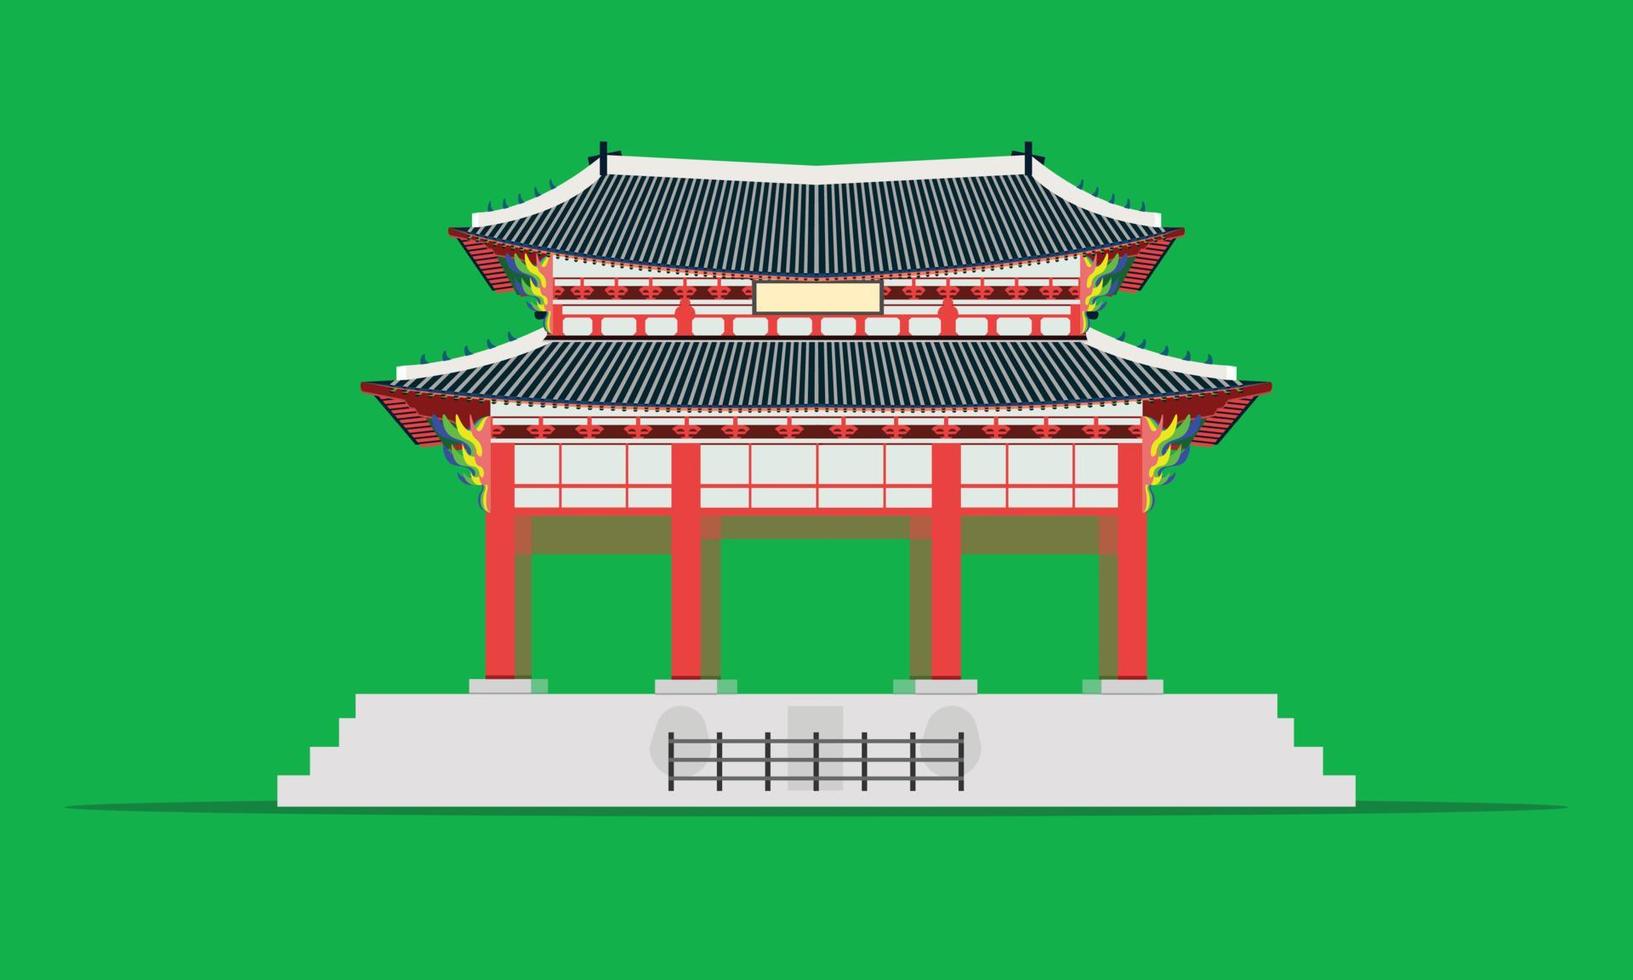 gwanghwamun vierkante poort gyeongbokgung paleis in seoul zuid-korea vector illustratie eps10